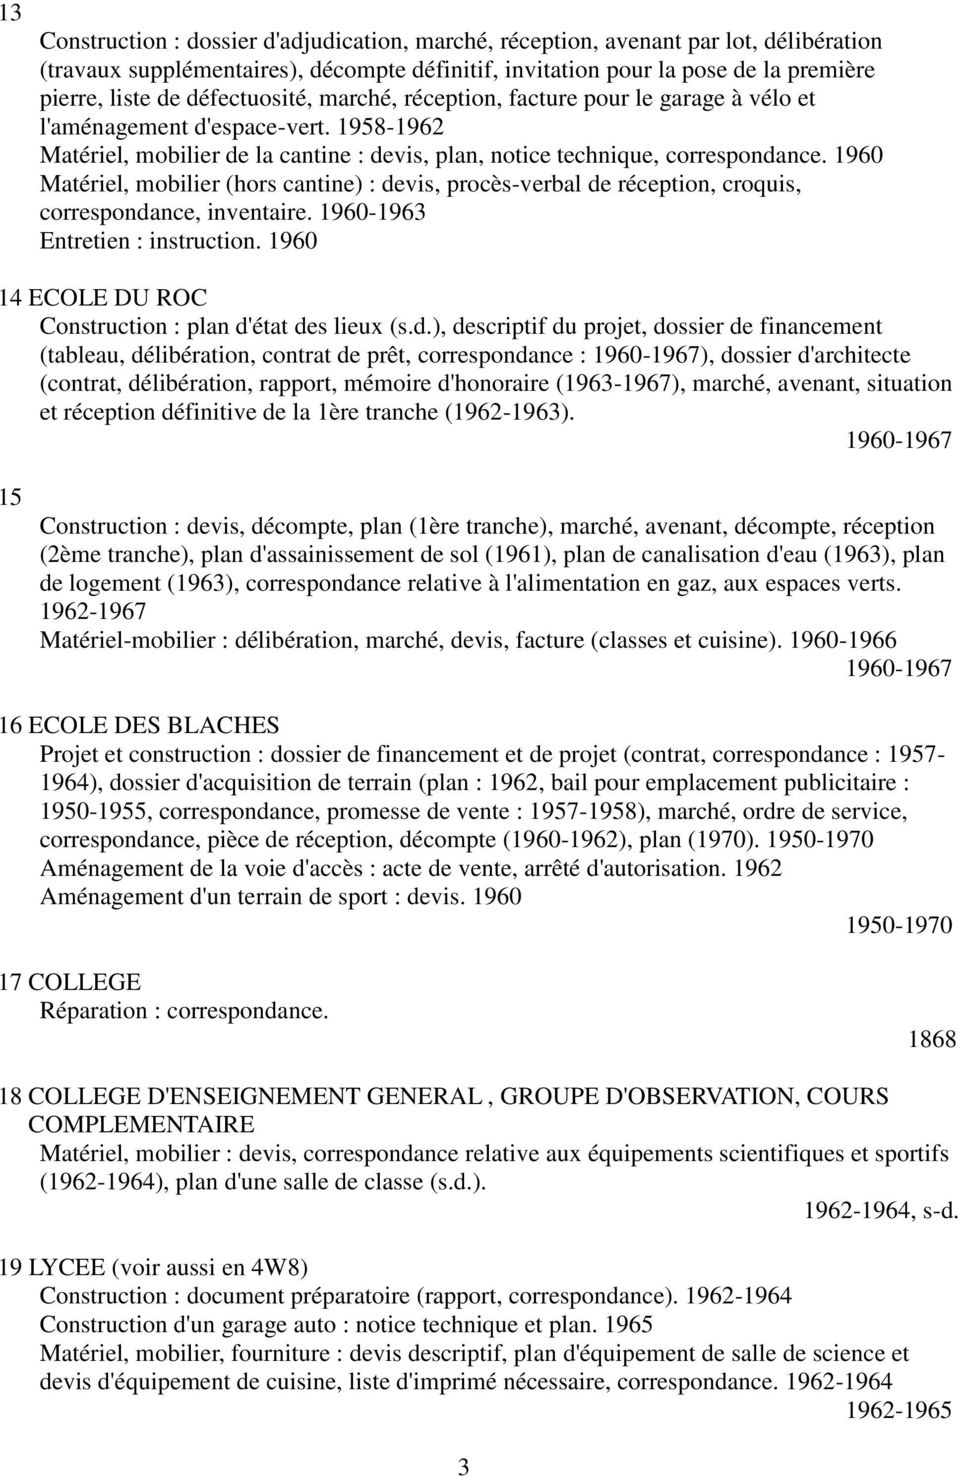 1960 Matériel, mobilier (hors cantine) : devis, procès-verbal de réception, croquis, correspondance, inventaire. 1960-1963 Entretien : instruction.